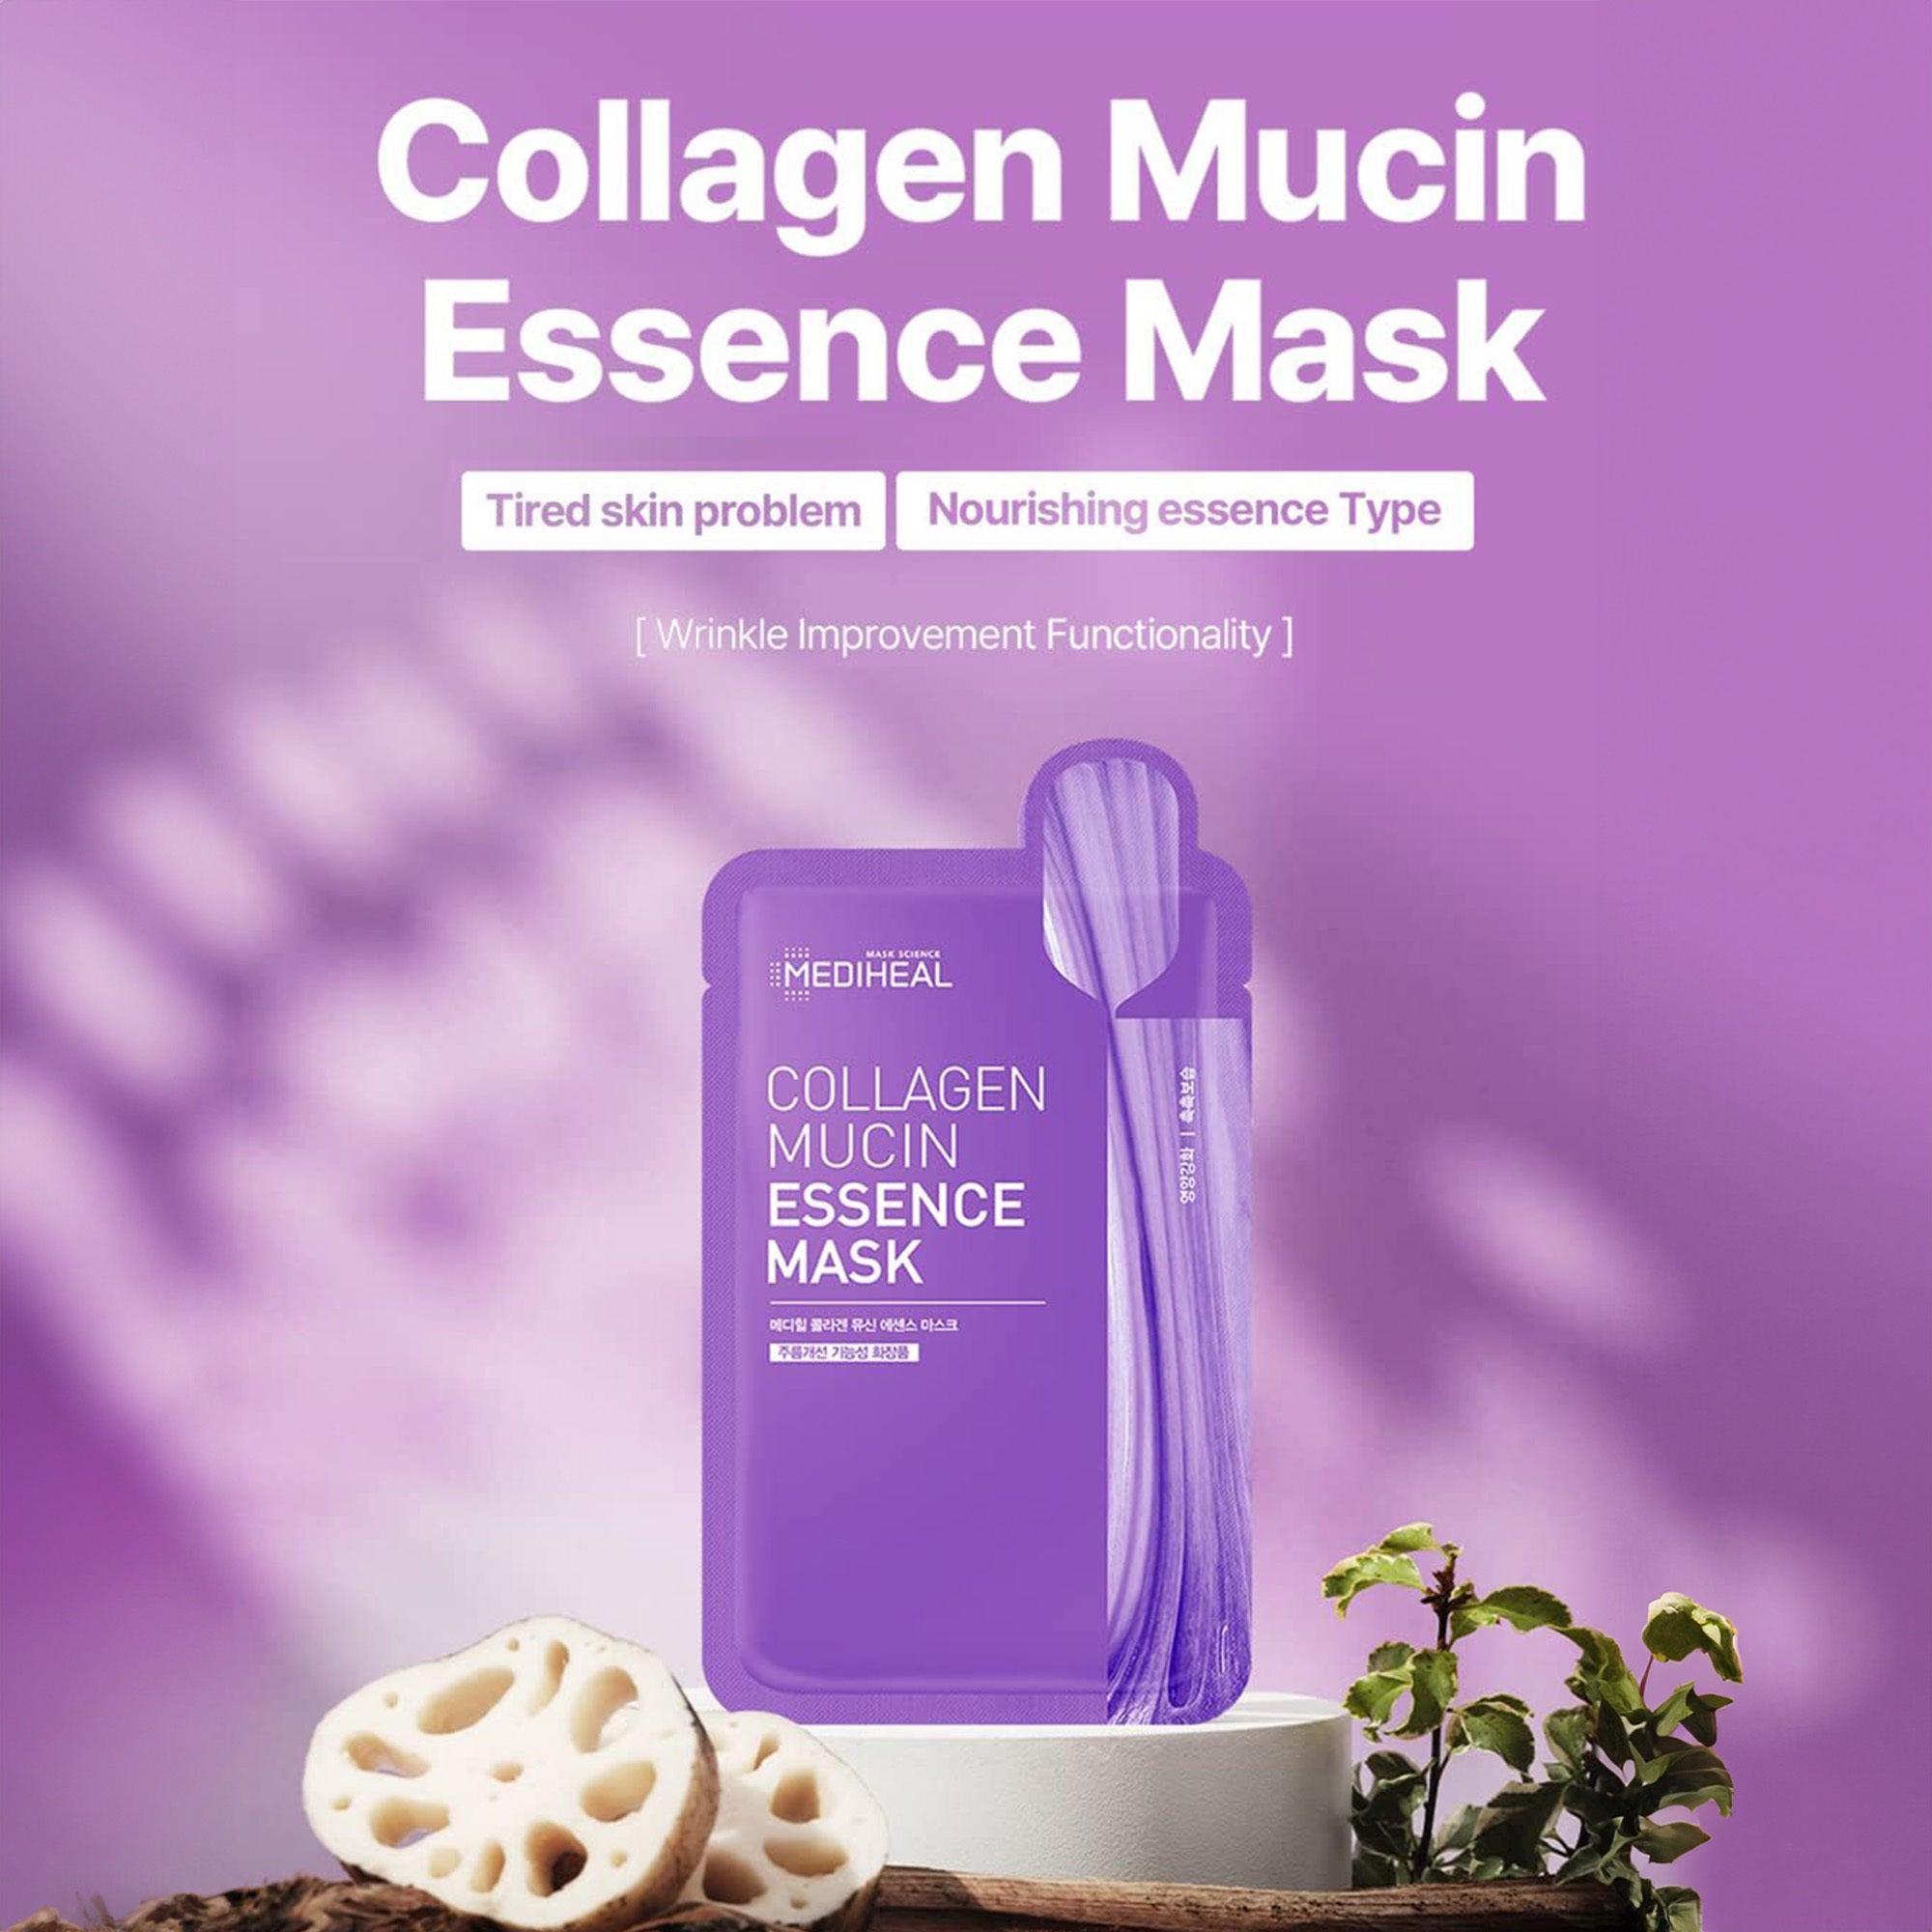 Collagen Mucin Essence Mask